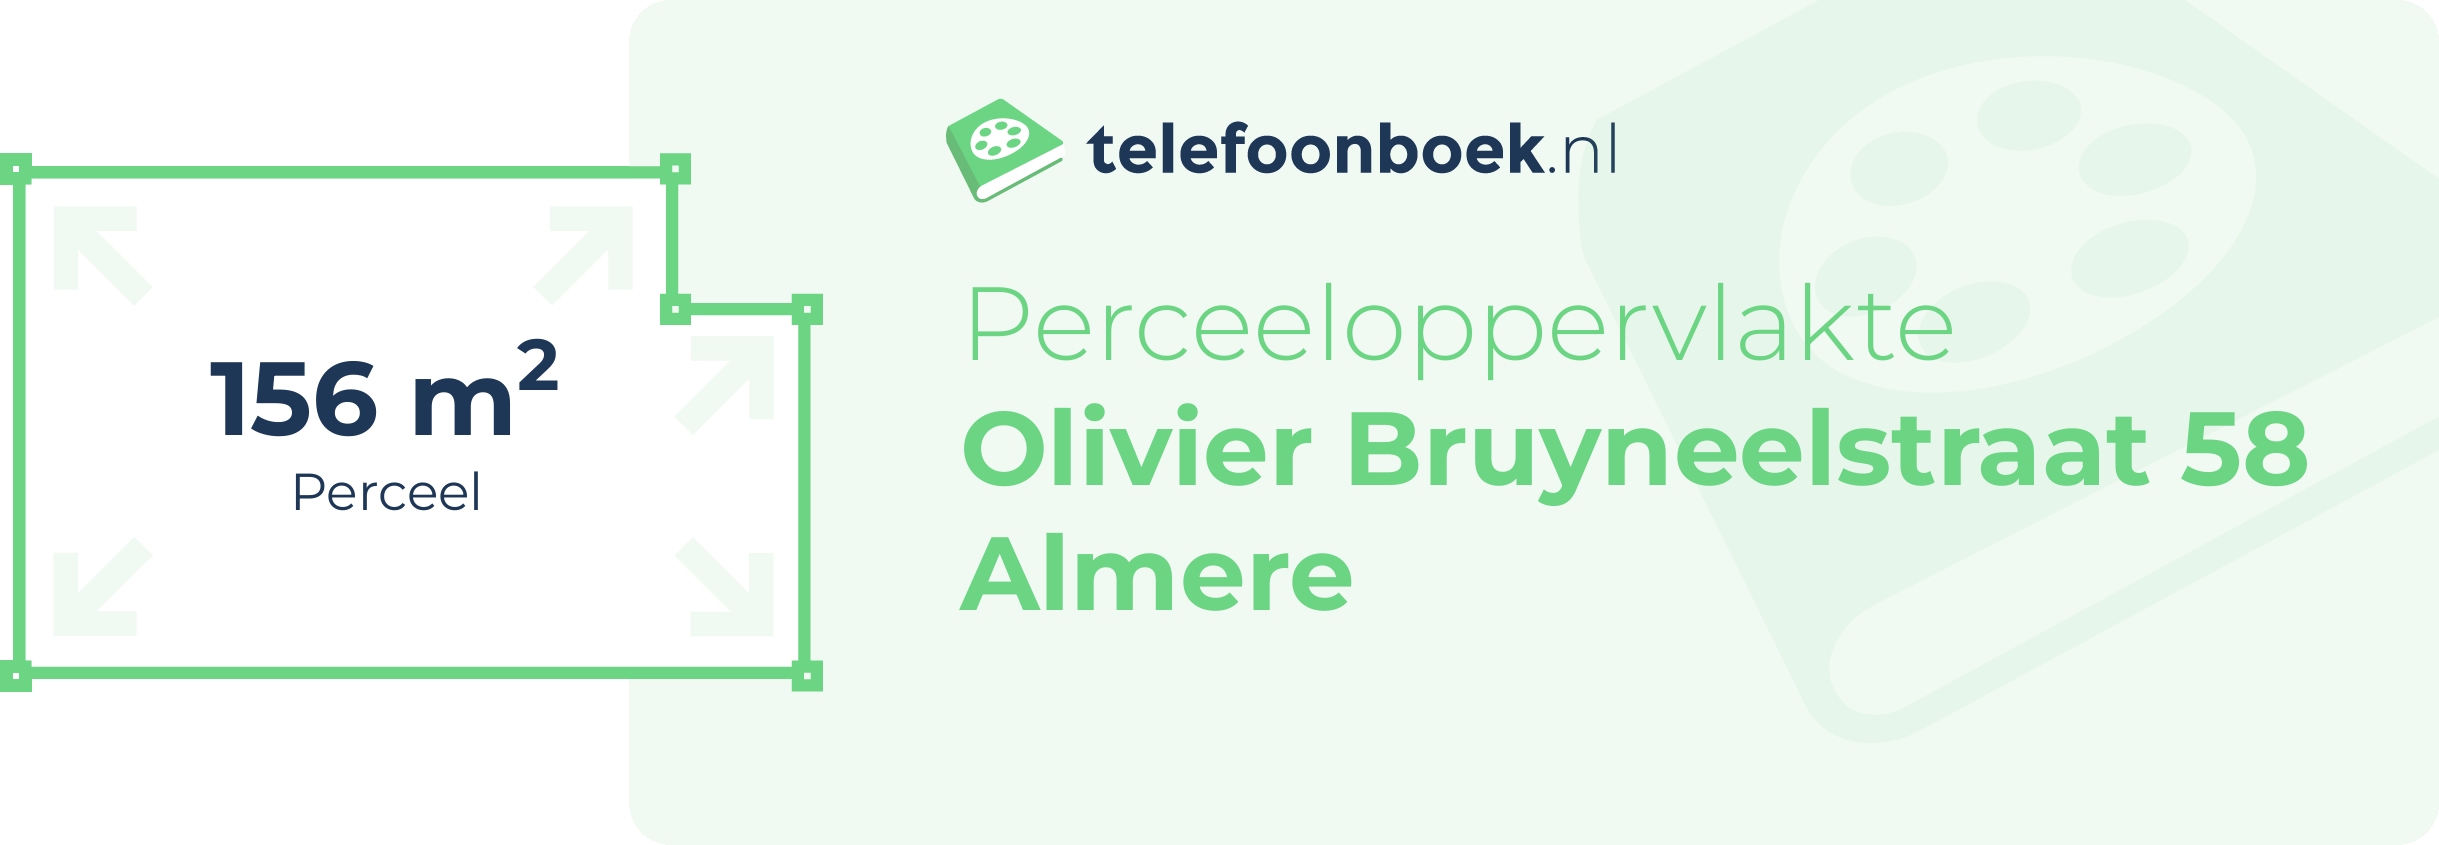 Perceeloppervlakte Olivier Bruyneelstraat 58 Almere